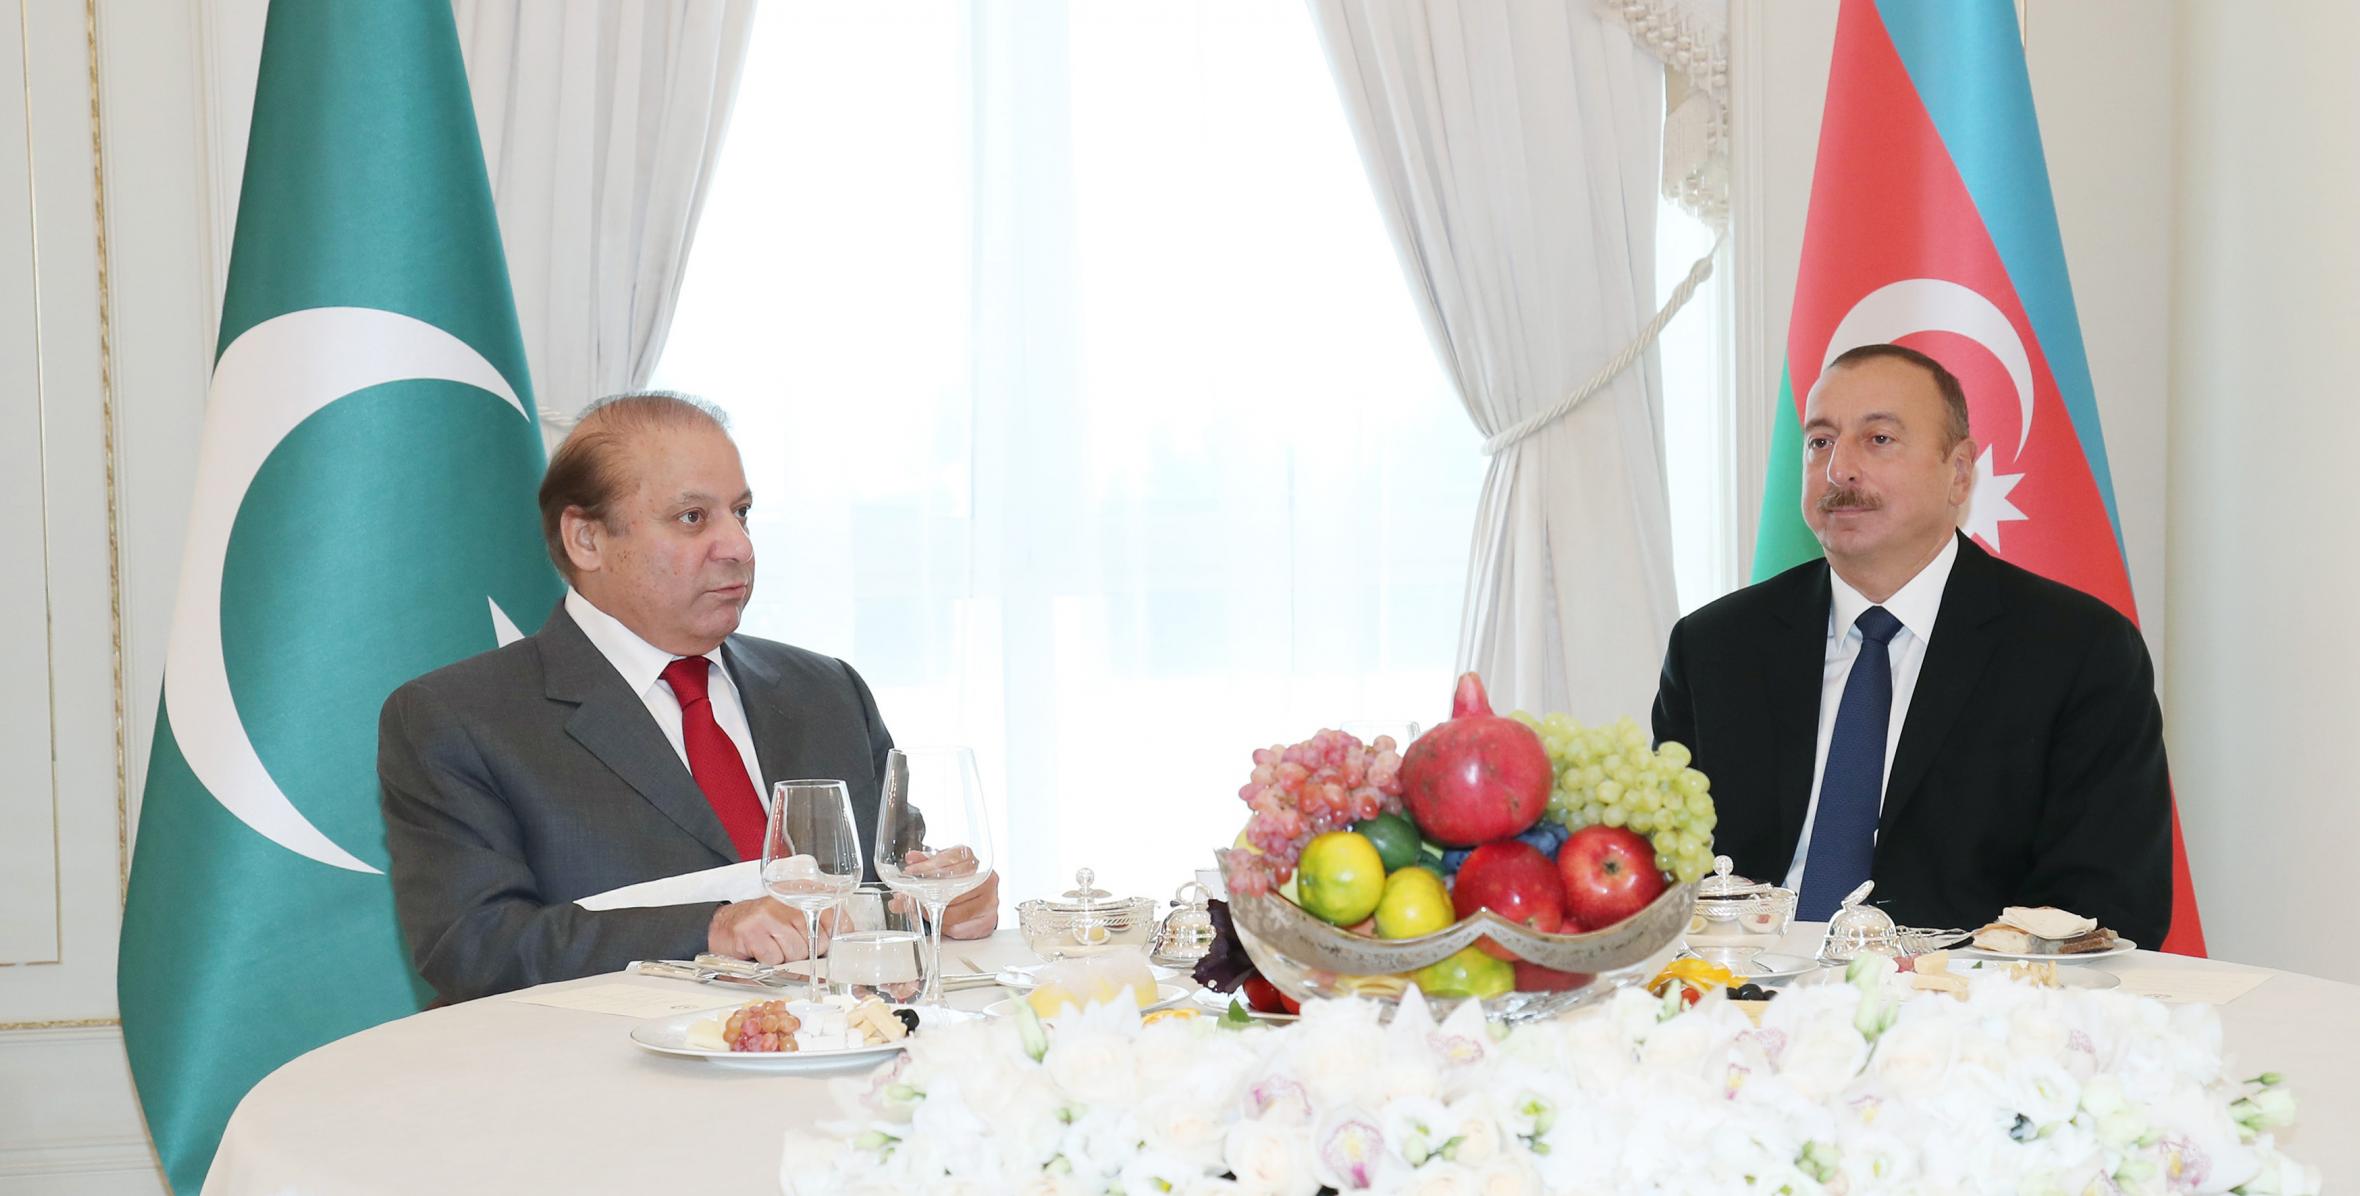 От имени Ильхама Алиева был дан официальный обед в честь премьер-министра Исламской Республики Пакистан Мухаммада Наваза Шарифа